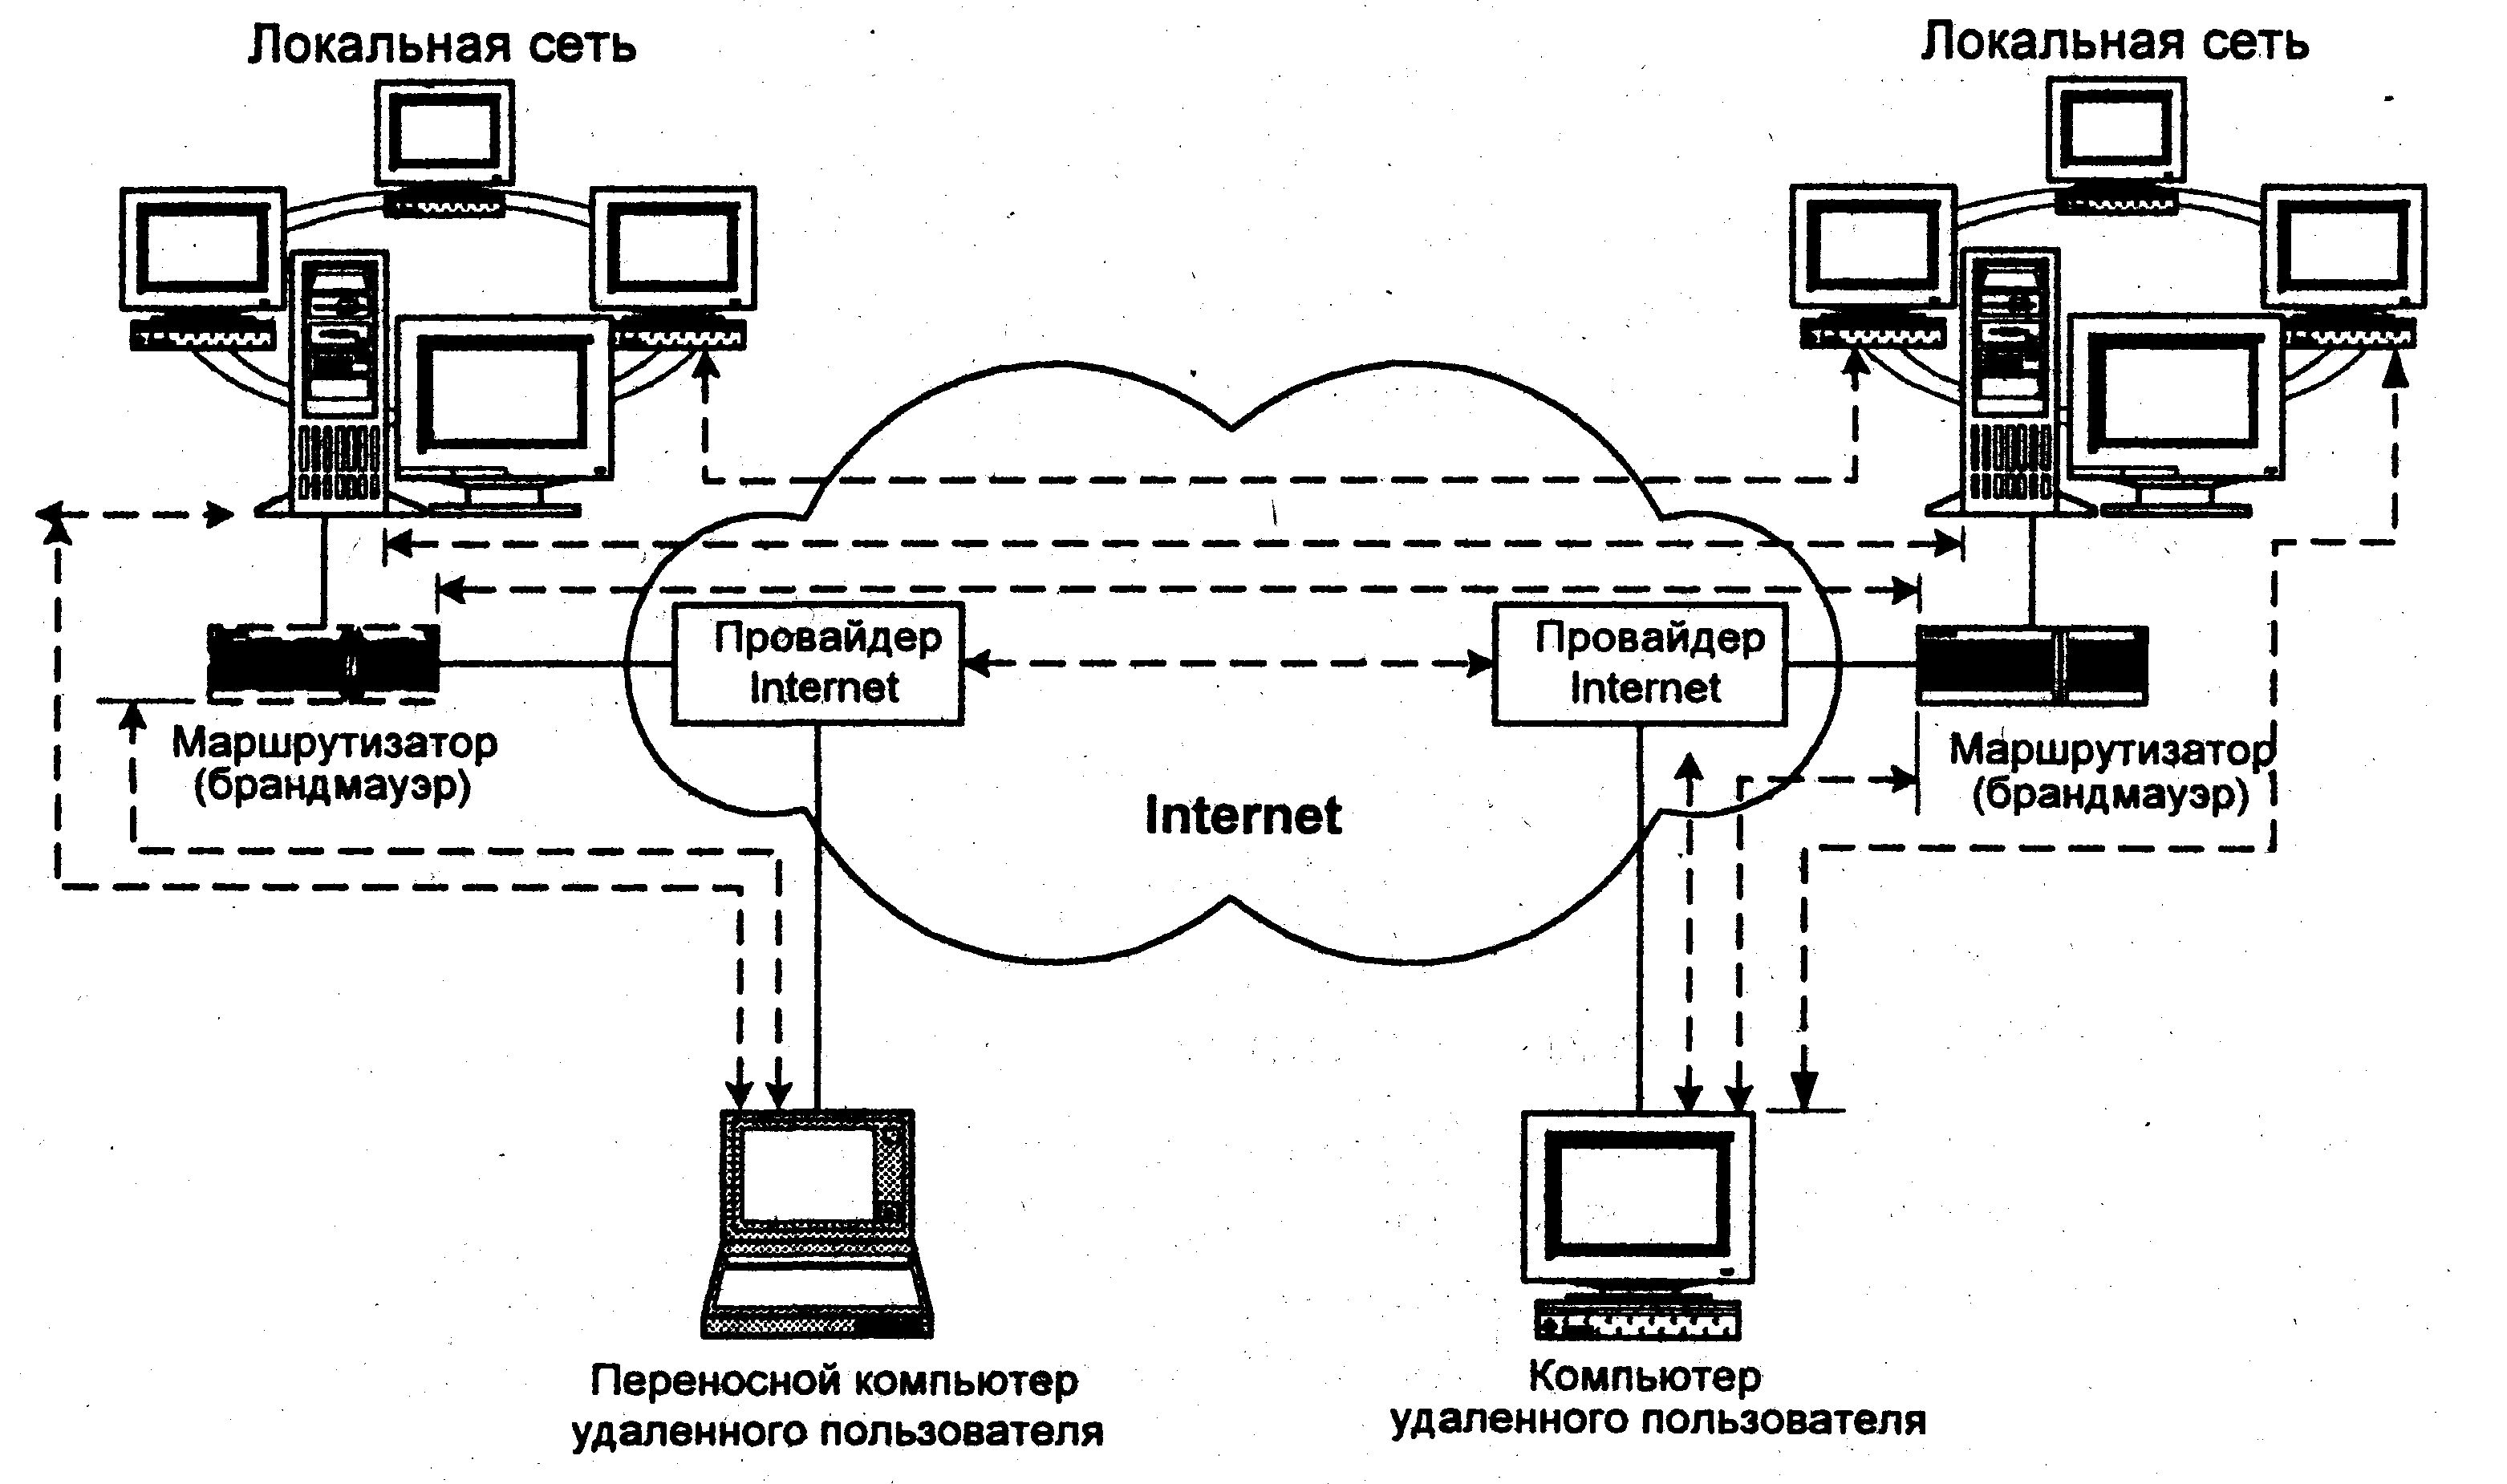 Локальная вычислительная сеть локальные вычислительные сети. Моделирование компьютерных сетей топология звезда схема. Локально вычислительная сеть схема. Локальной вычеслительная сеть.